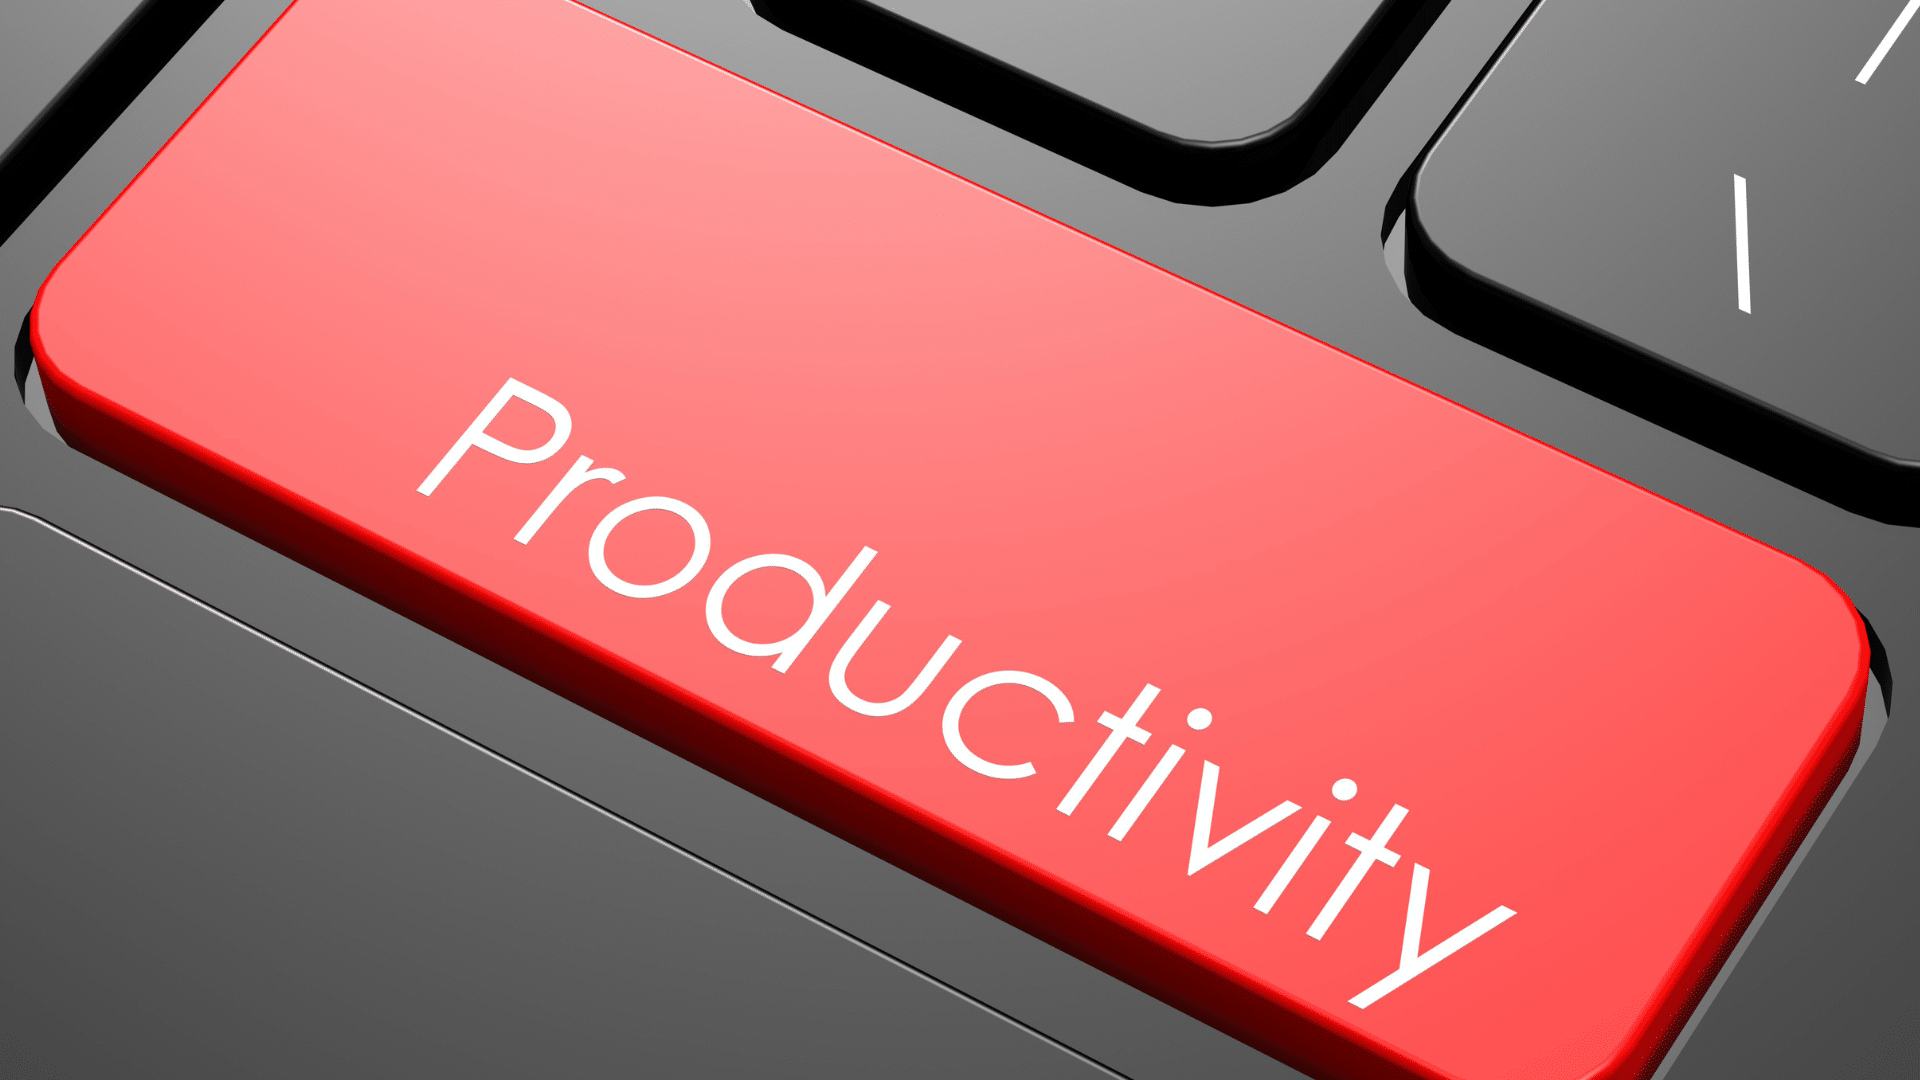 Mejora tu productividad con Windows 10 Pro